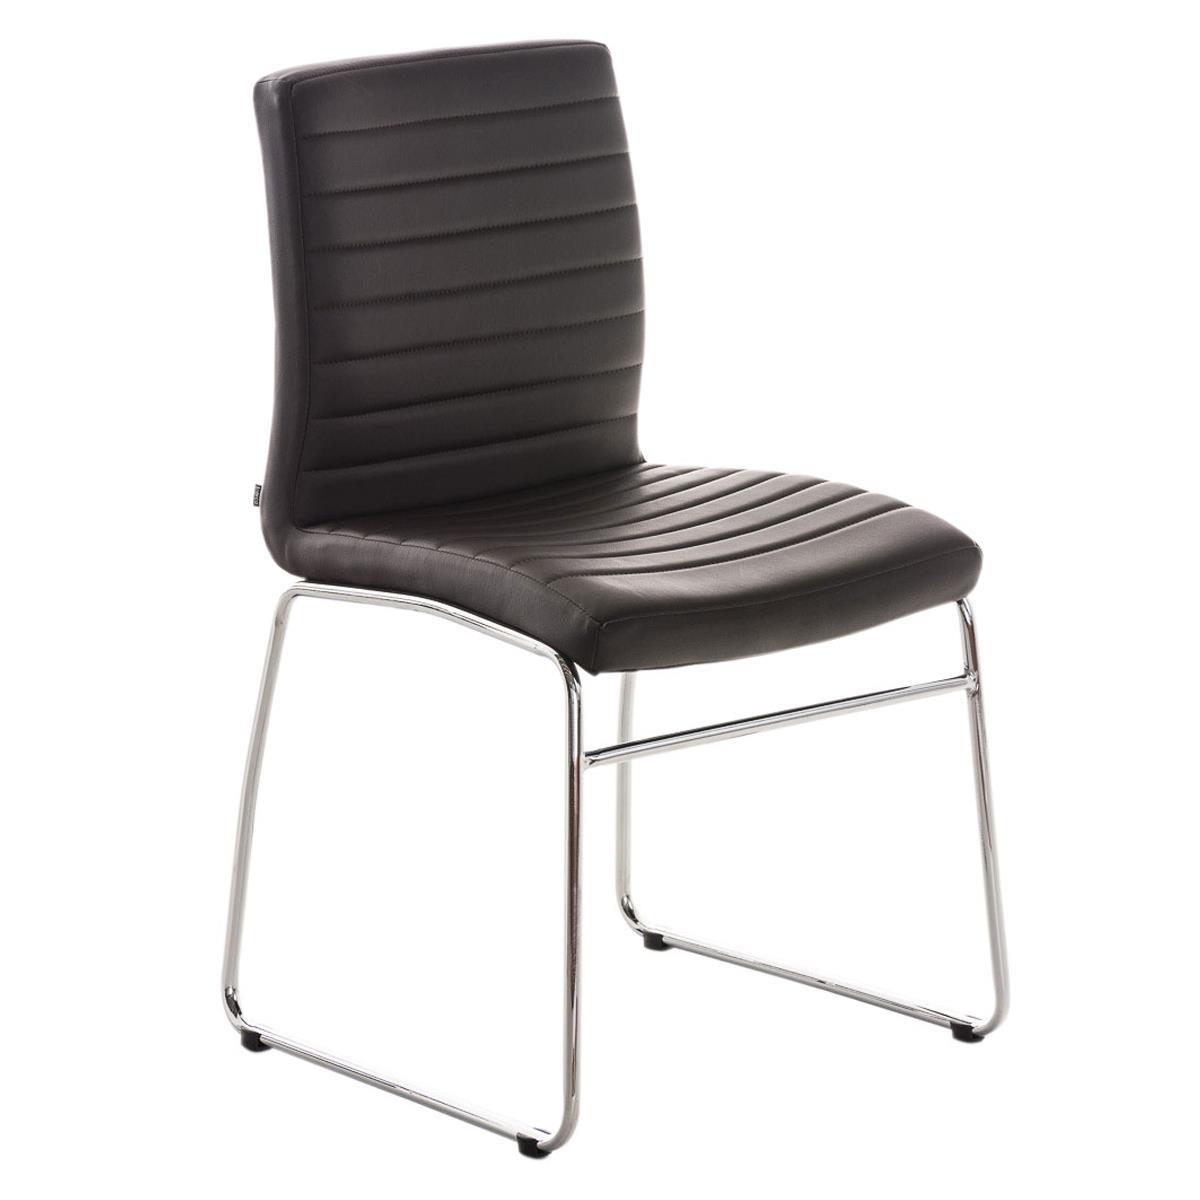 Cadeira de Visita LESA, Design Exclusivo, Acolchoado Extra com Costuras, Pele Cor Castanho